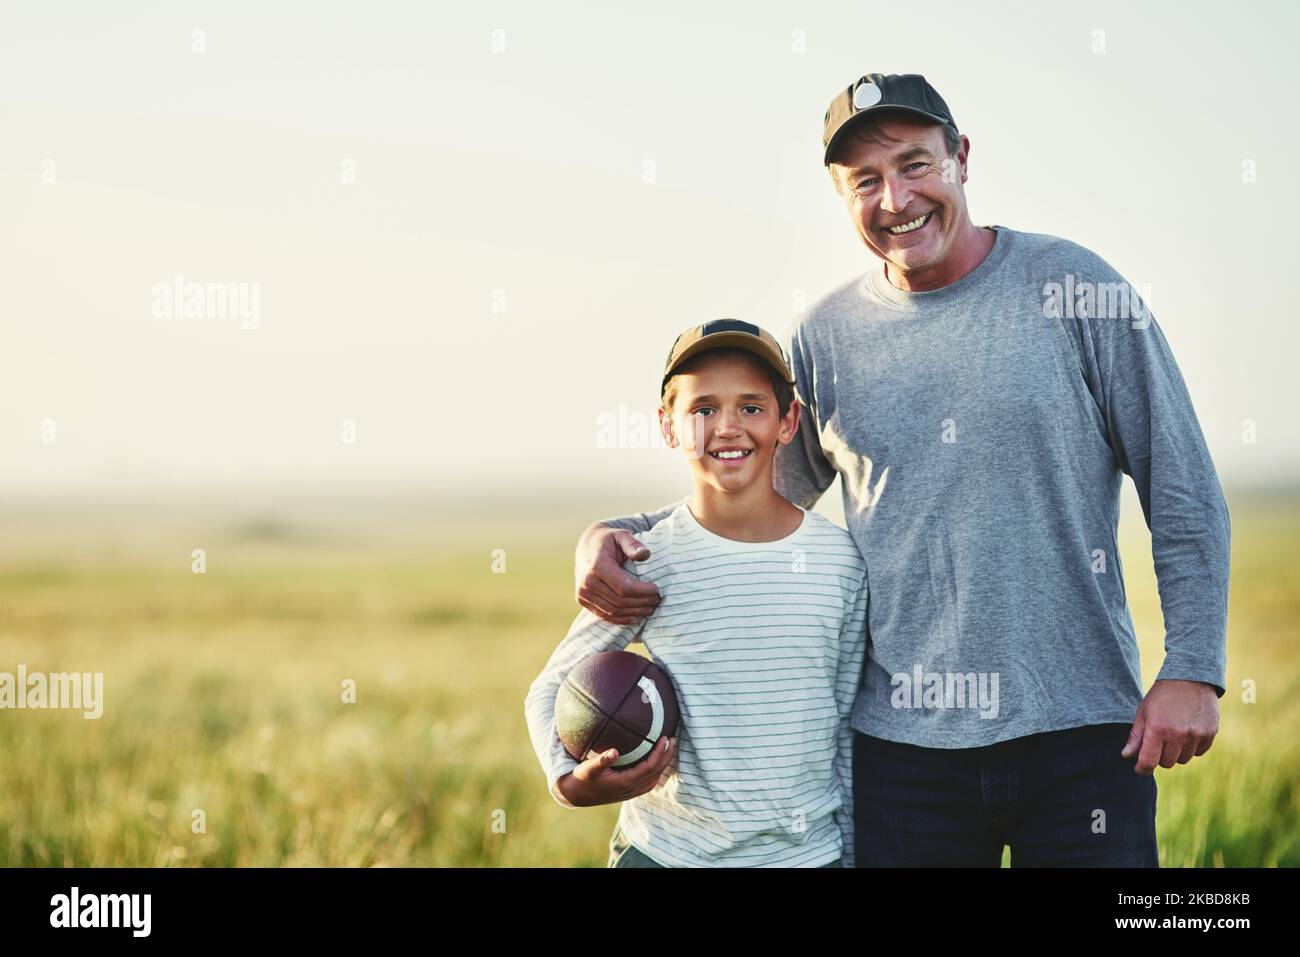 Wir beide freuen uns sehr über das Spiel. Porträt von Vater und Sohn, die mit einem Fußball auf einem Feld spielen. Stockfoto